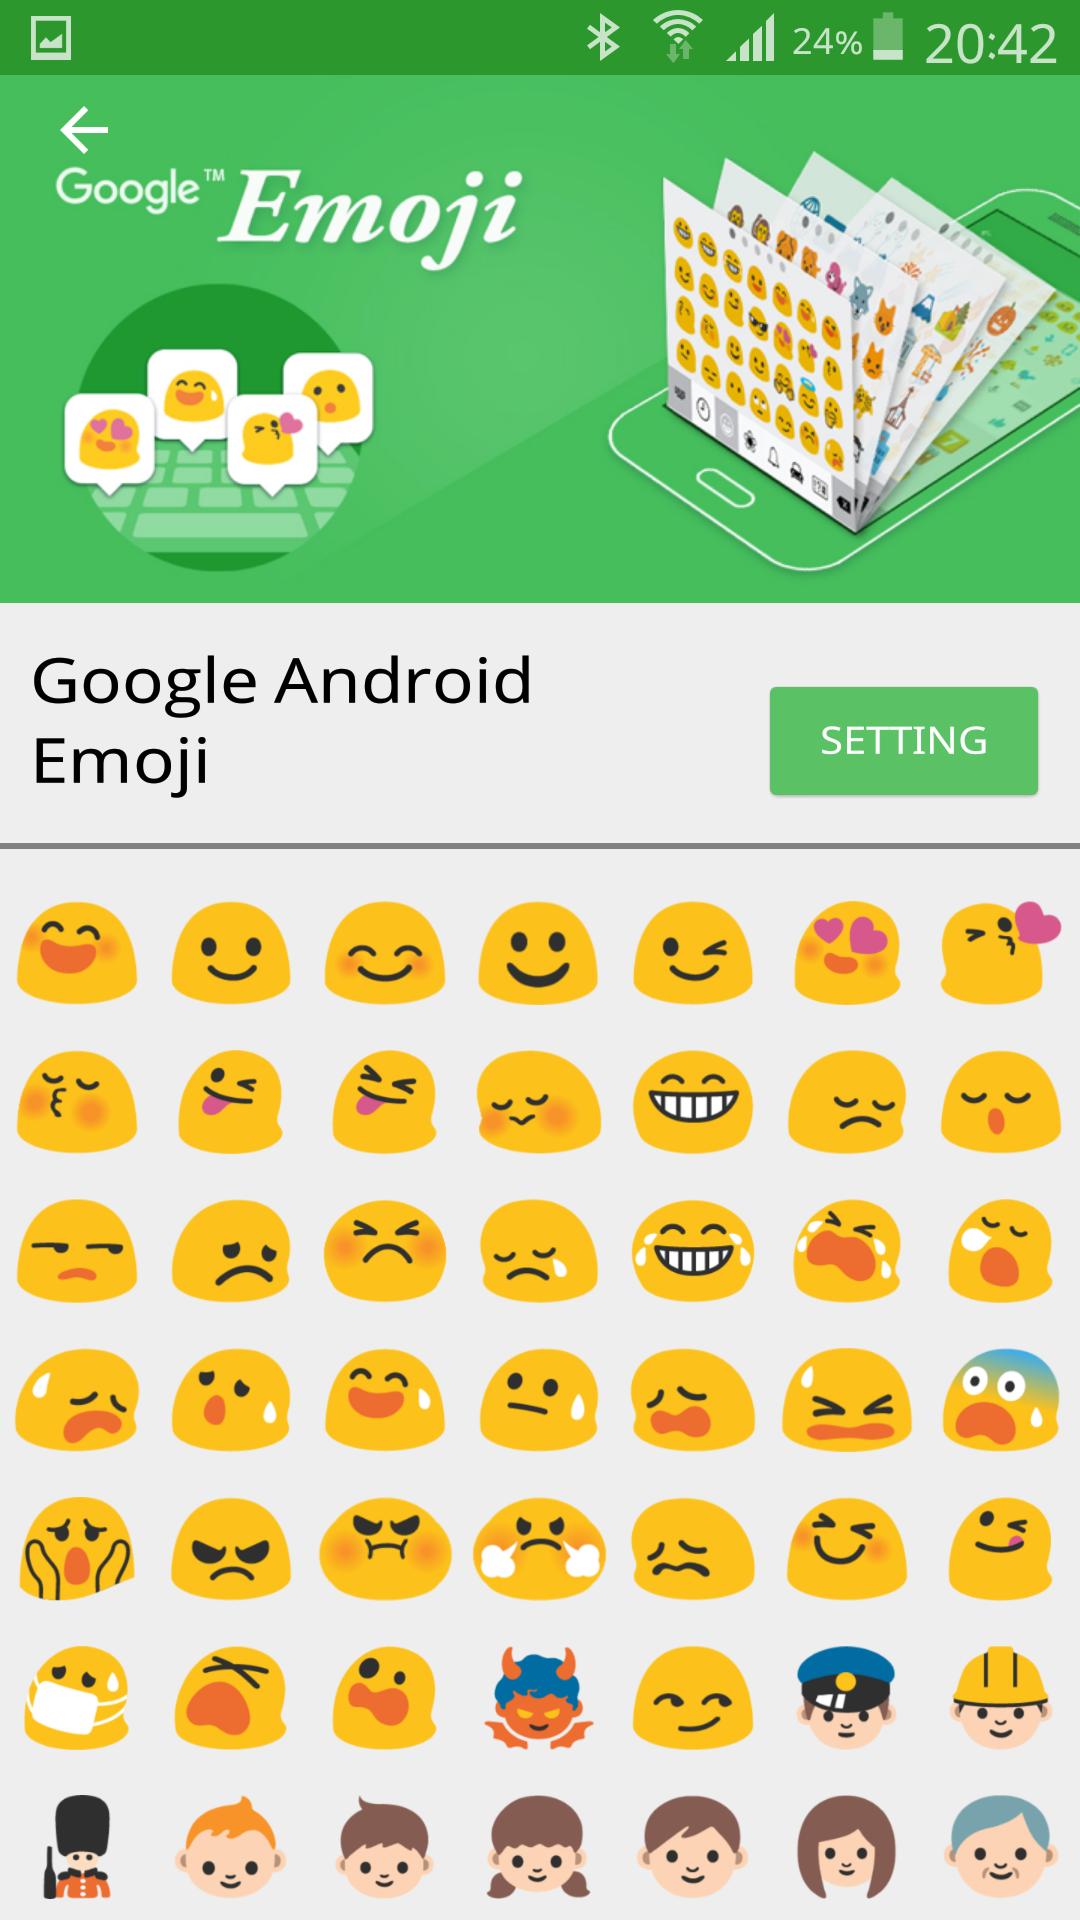 Sử dụng Emoji Font Pro-Emoticons APK, người dùng Android có thể tải xuống các biểu tượng cảm xúc độc đáo và đầy màu sắc nhất. Với đủ loại emoji, từ cười đến nước mắt, tính năng này giúp bạn truyền tải cảm xúc của mình một cách dễ dàng nhất. Hãy truy cập trang web ngay để tải xuống Emoji Font Pro-Emoticons APK và hưởng một trải nghiệm tuyệt vời trên điện thoại của bạn!